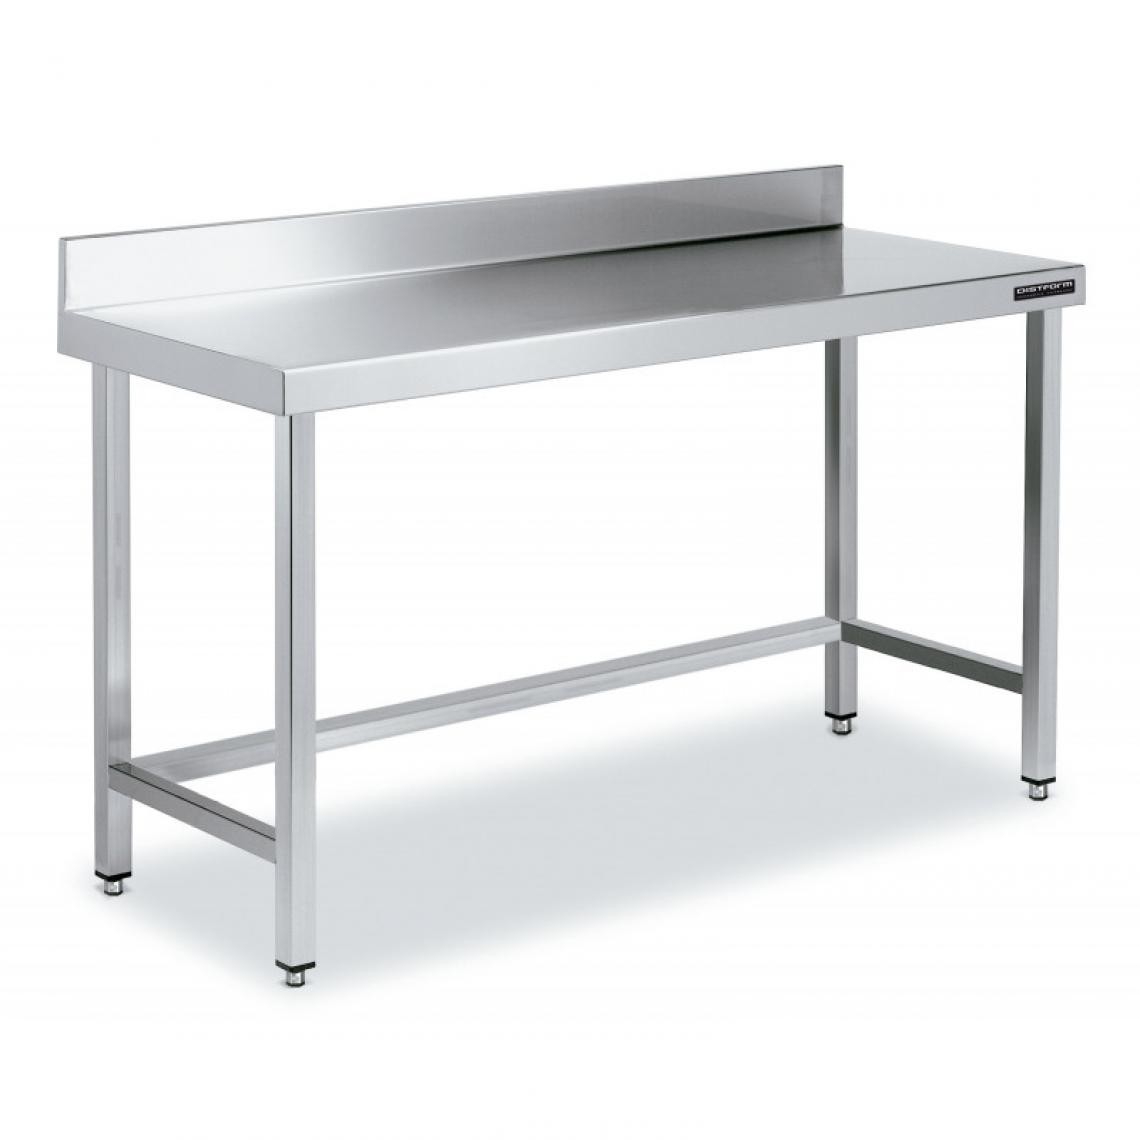 DISTFORM - Table de Travail Adossée Inox avec Renforts - Gamme 600 - Hauteur 600 - Distform - Acier inoxydable900x600 - Tables à manger